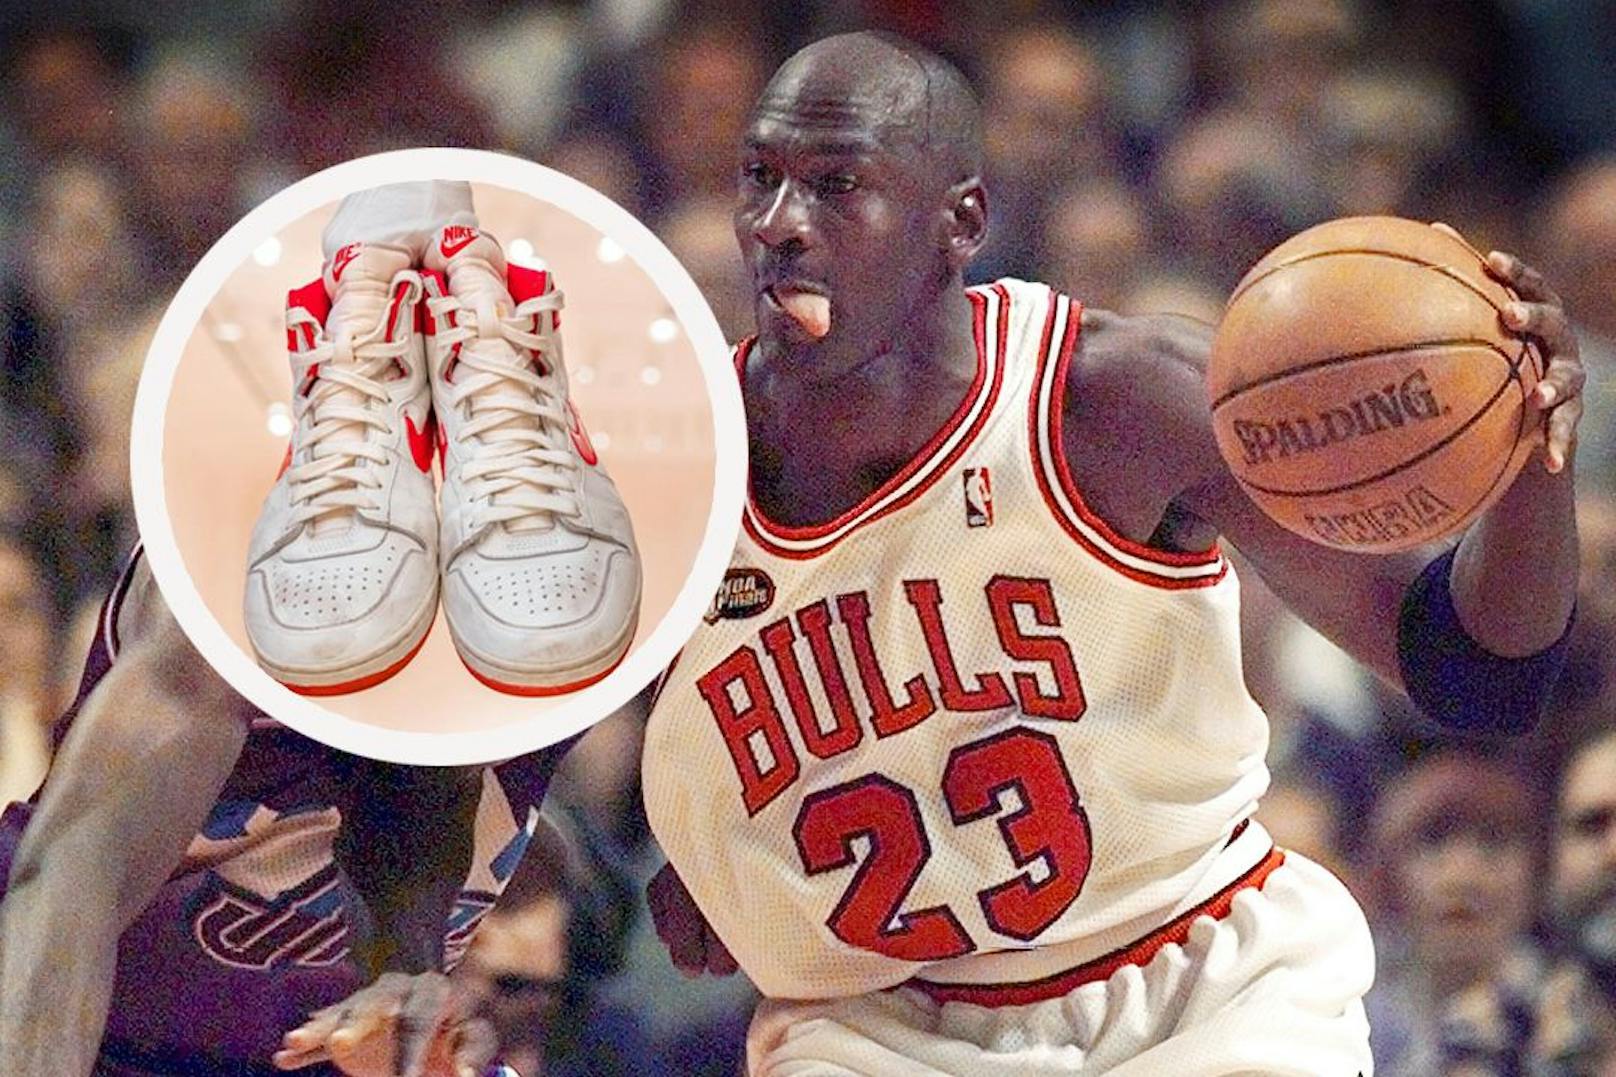 Balljunge verdient mit Jordan-Schuhen 1,5 Millionen